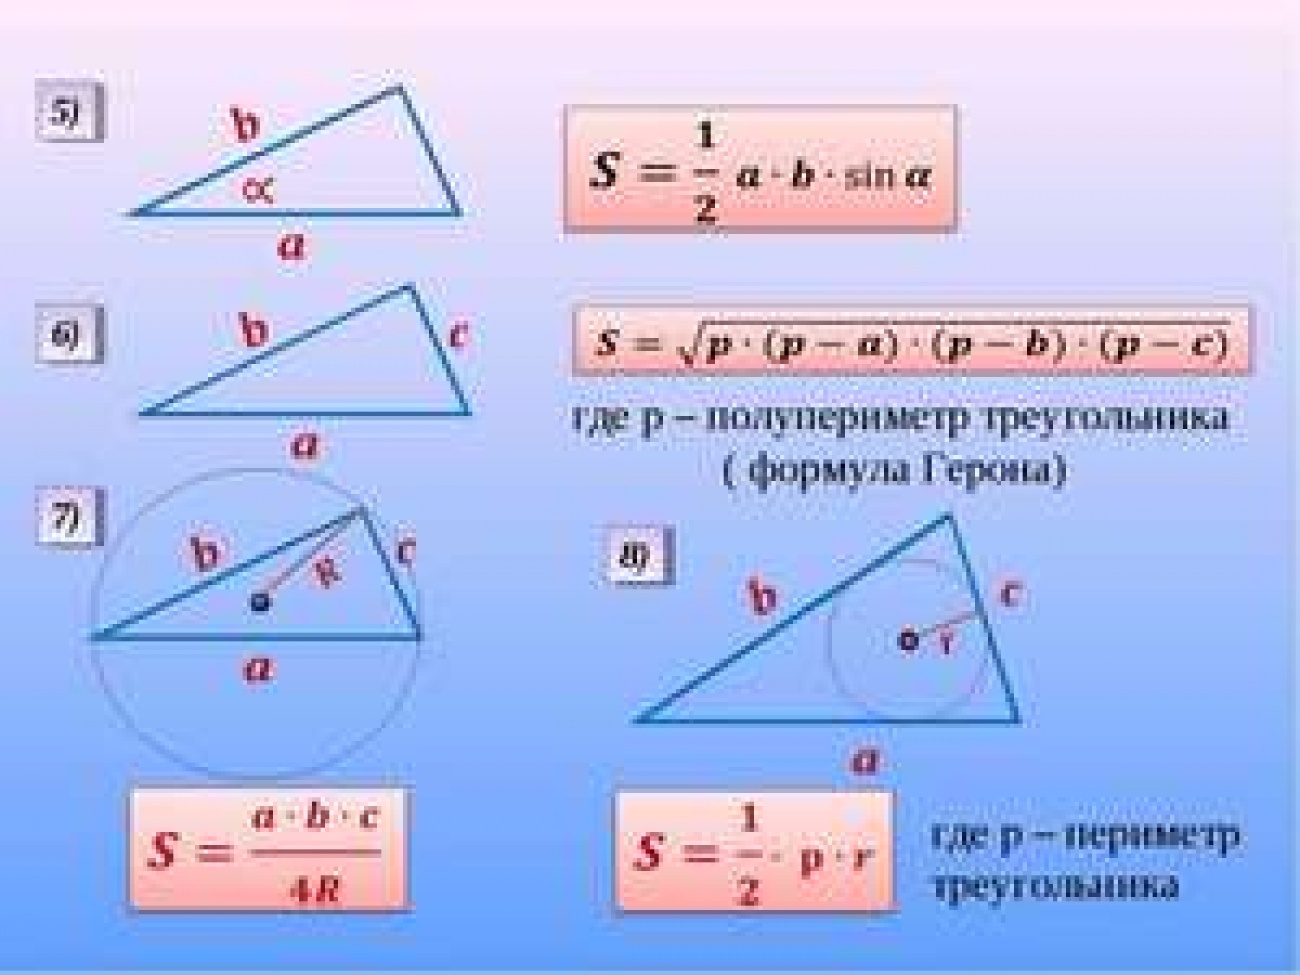 Свойства треугольников, формулы и примеры